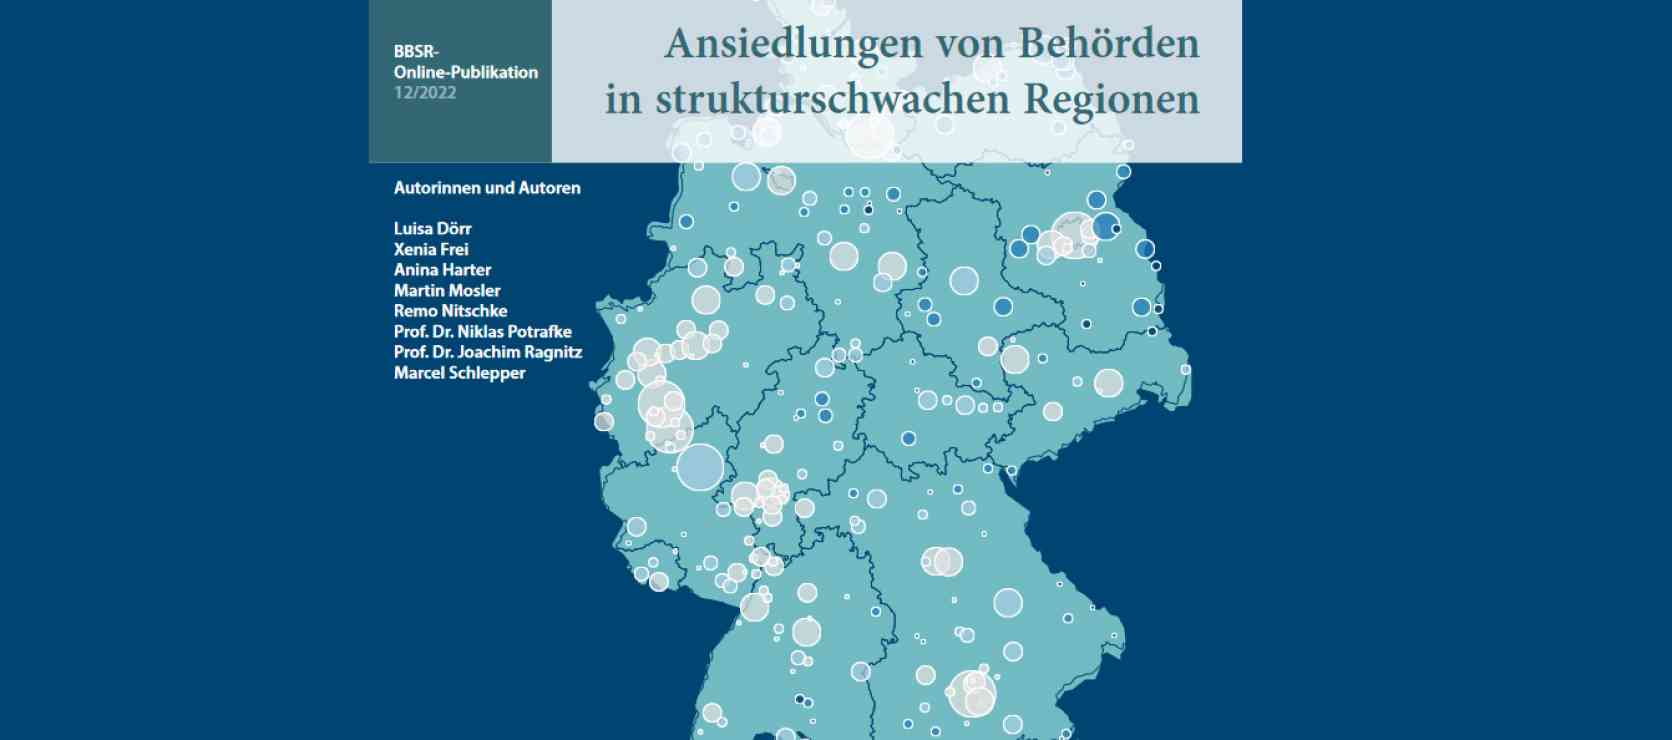 Studie "Ansiedlungen von Behörden in strukturschwachen Regionen"